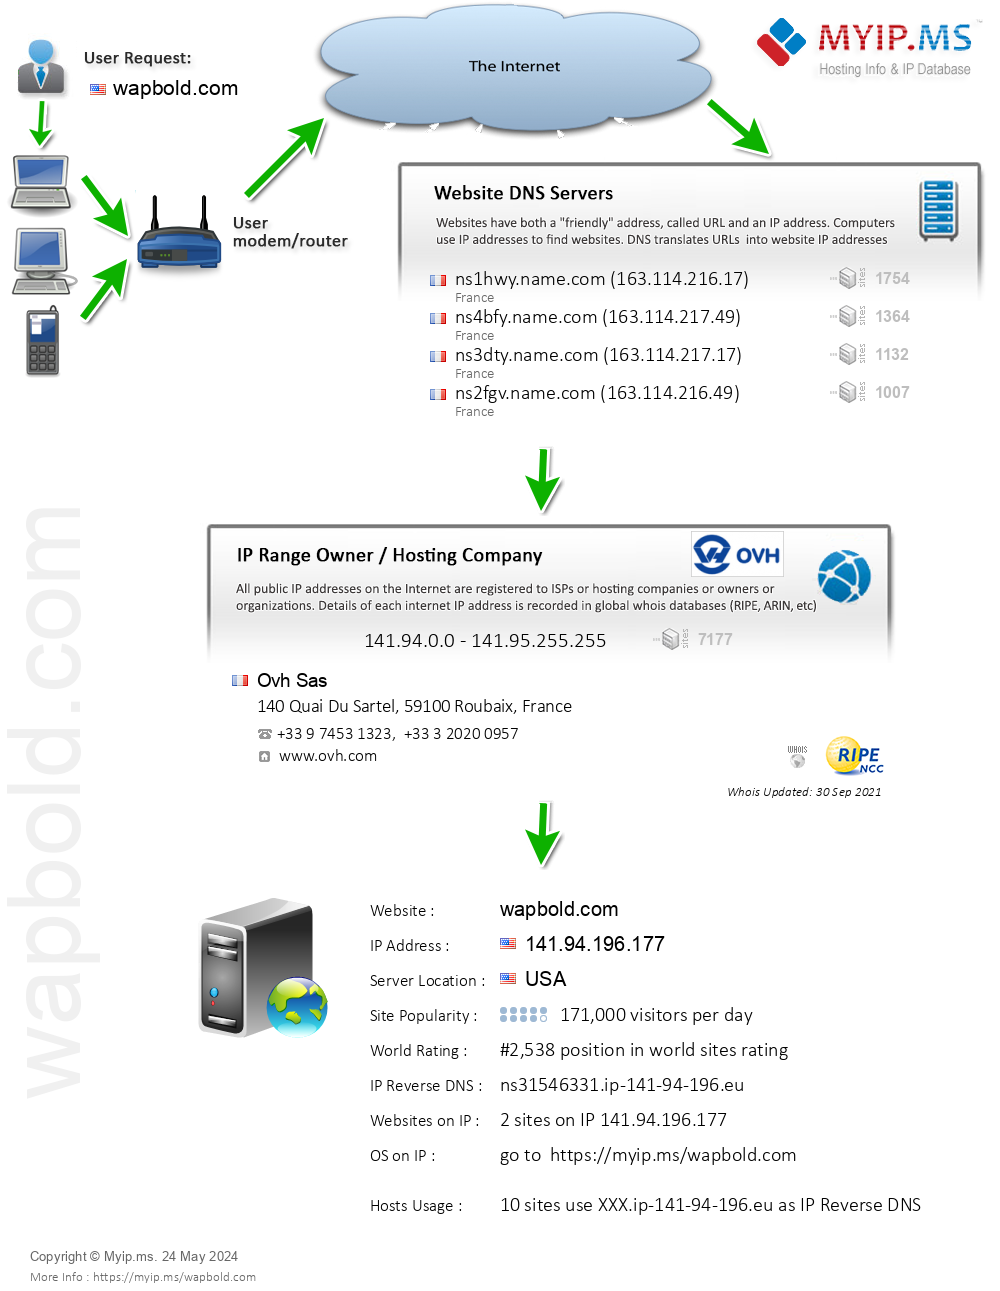 Wapbold.com - Website Hosting Visual IP Diagram